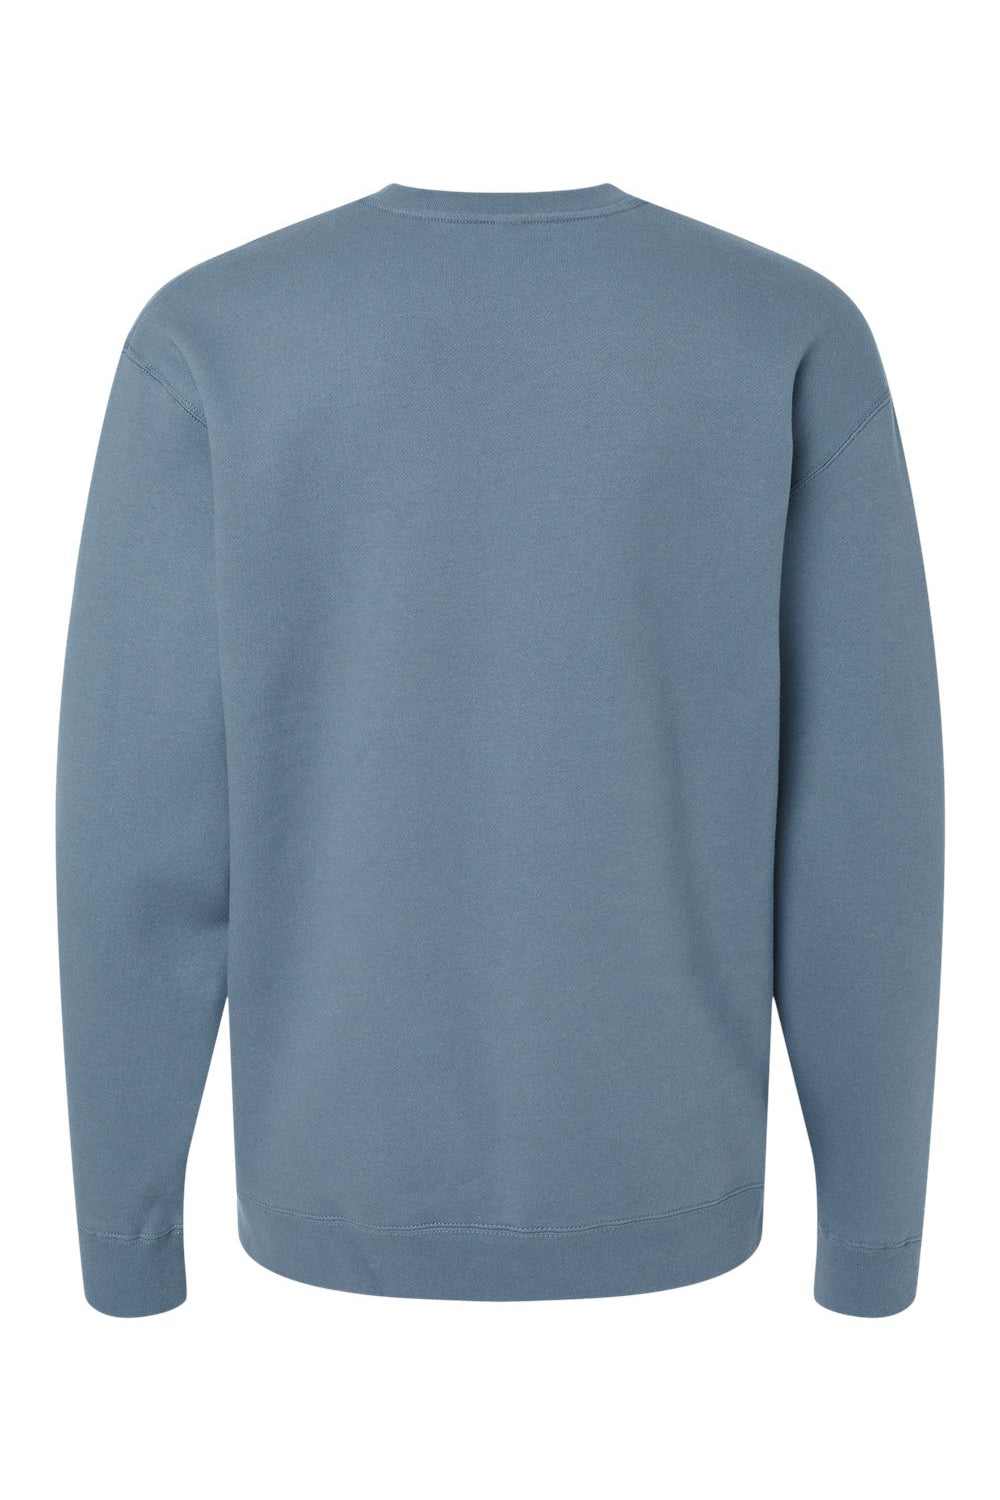 Independent Trading Co. IND3000 Mens Crewneck Sweatshirt Storm Blue Flat Back